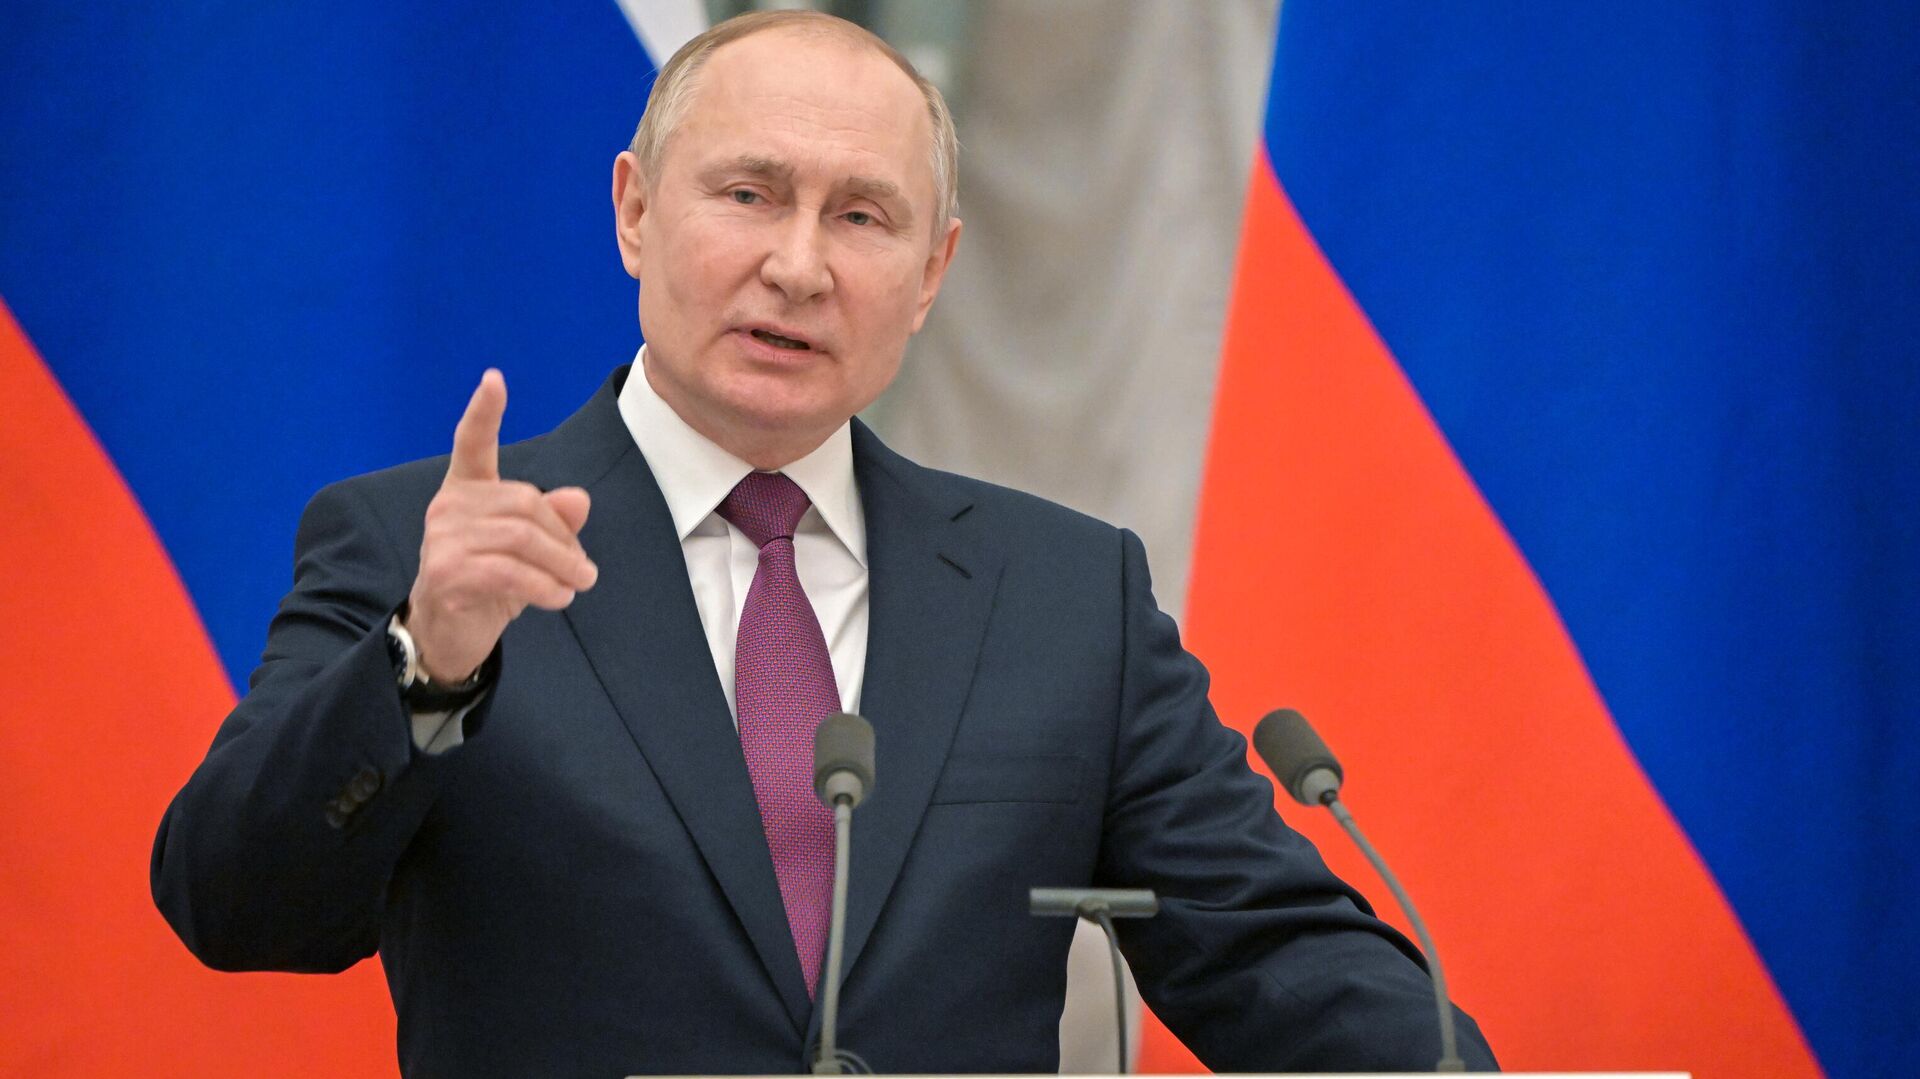 Putin: Avrupa’nın izlediği ekonomi politikaları, ekonomik intihar